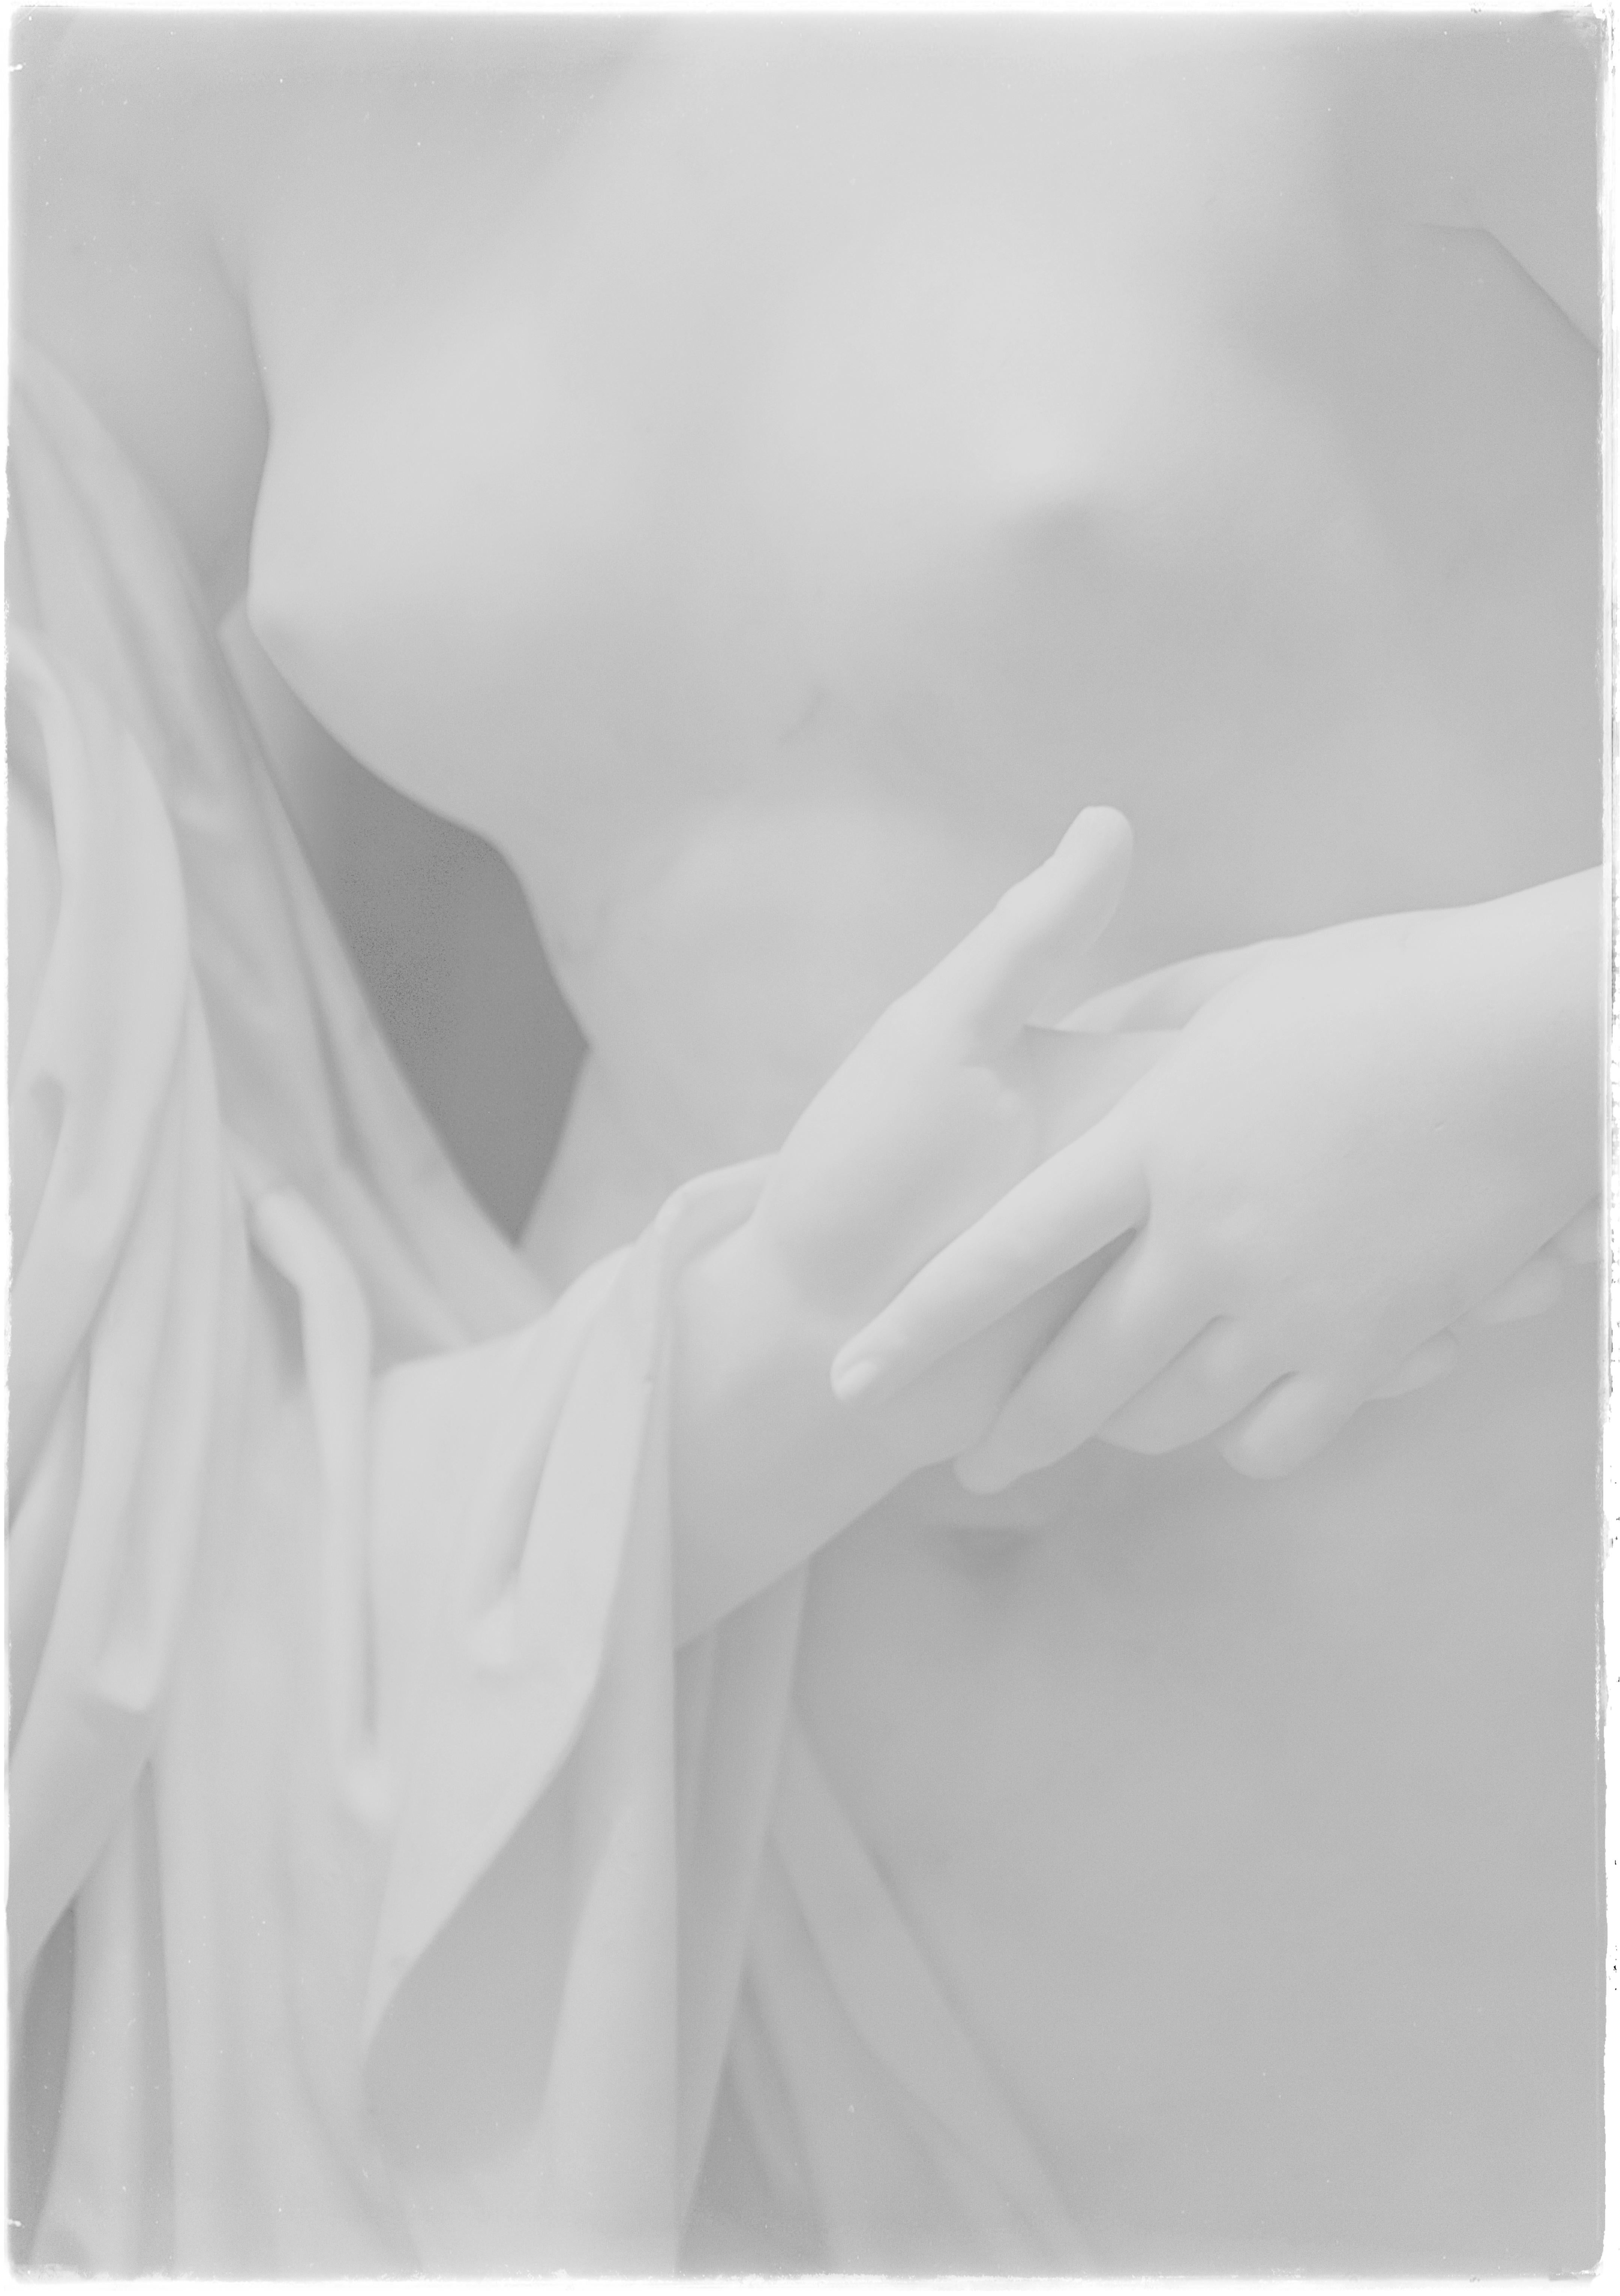 Still-Life Photograph Ugne Pouwell - Main dans la main - figure féminine en marbre 